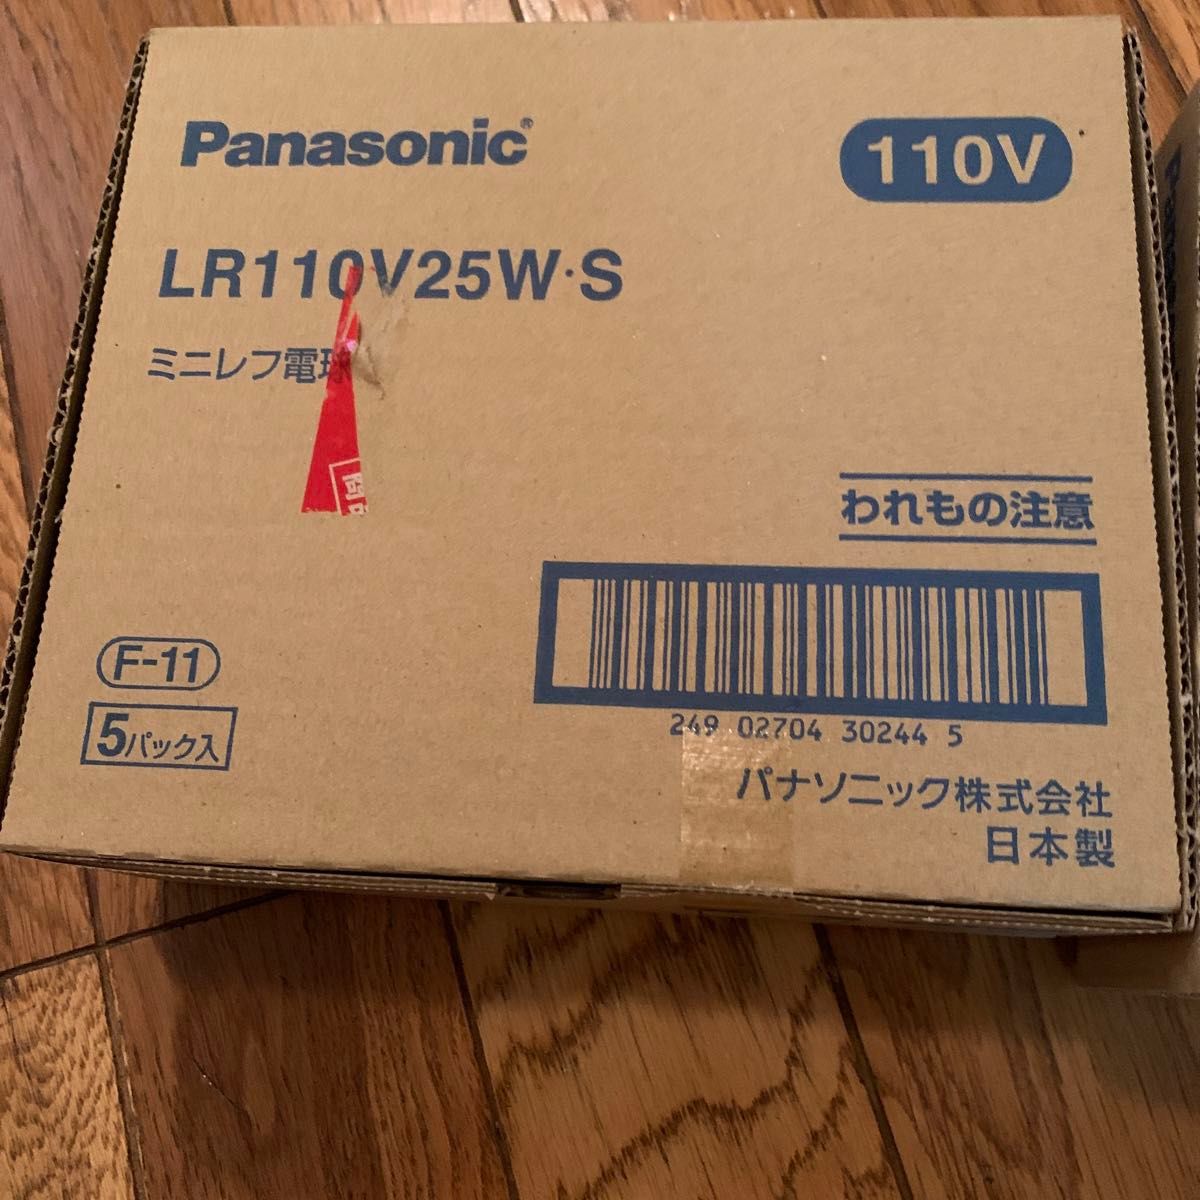 Panasonic LR110V25WS ミニレフ電球 110V 25W形 口金E17 5個セット